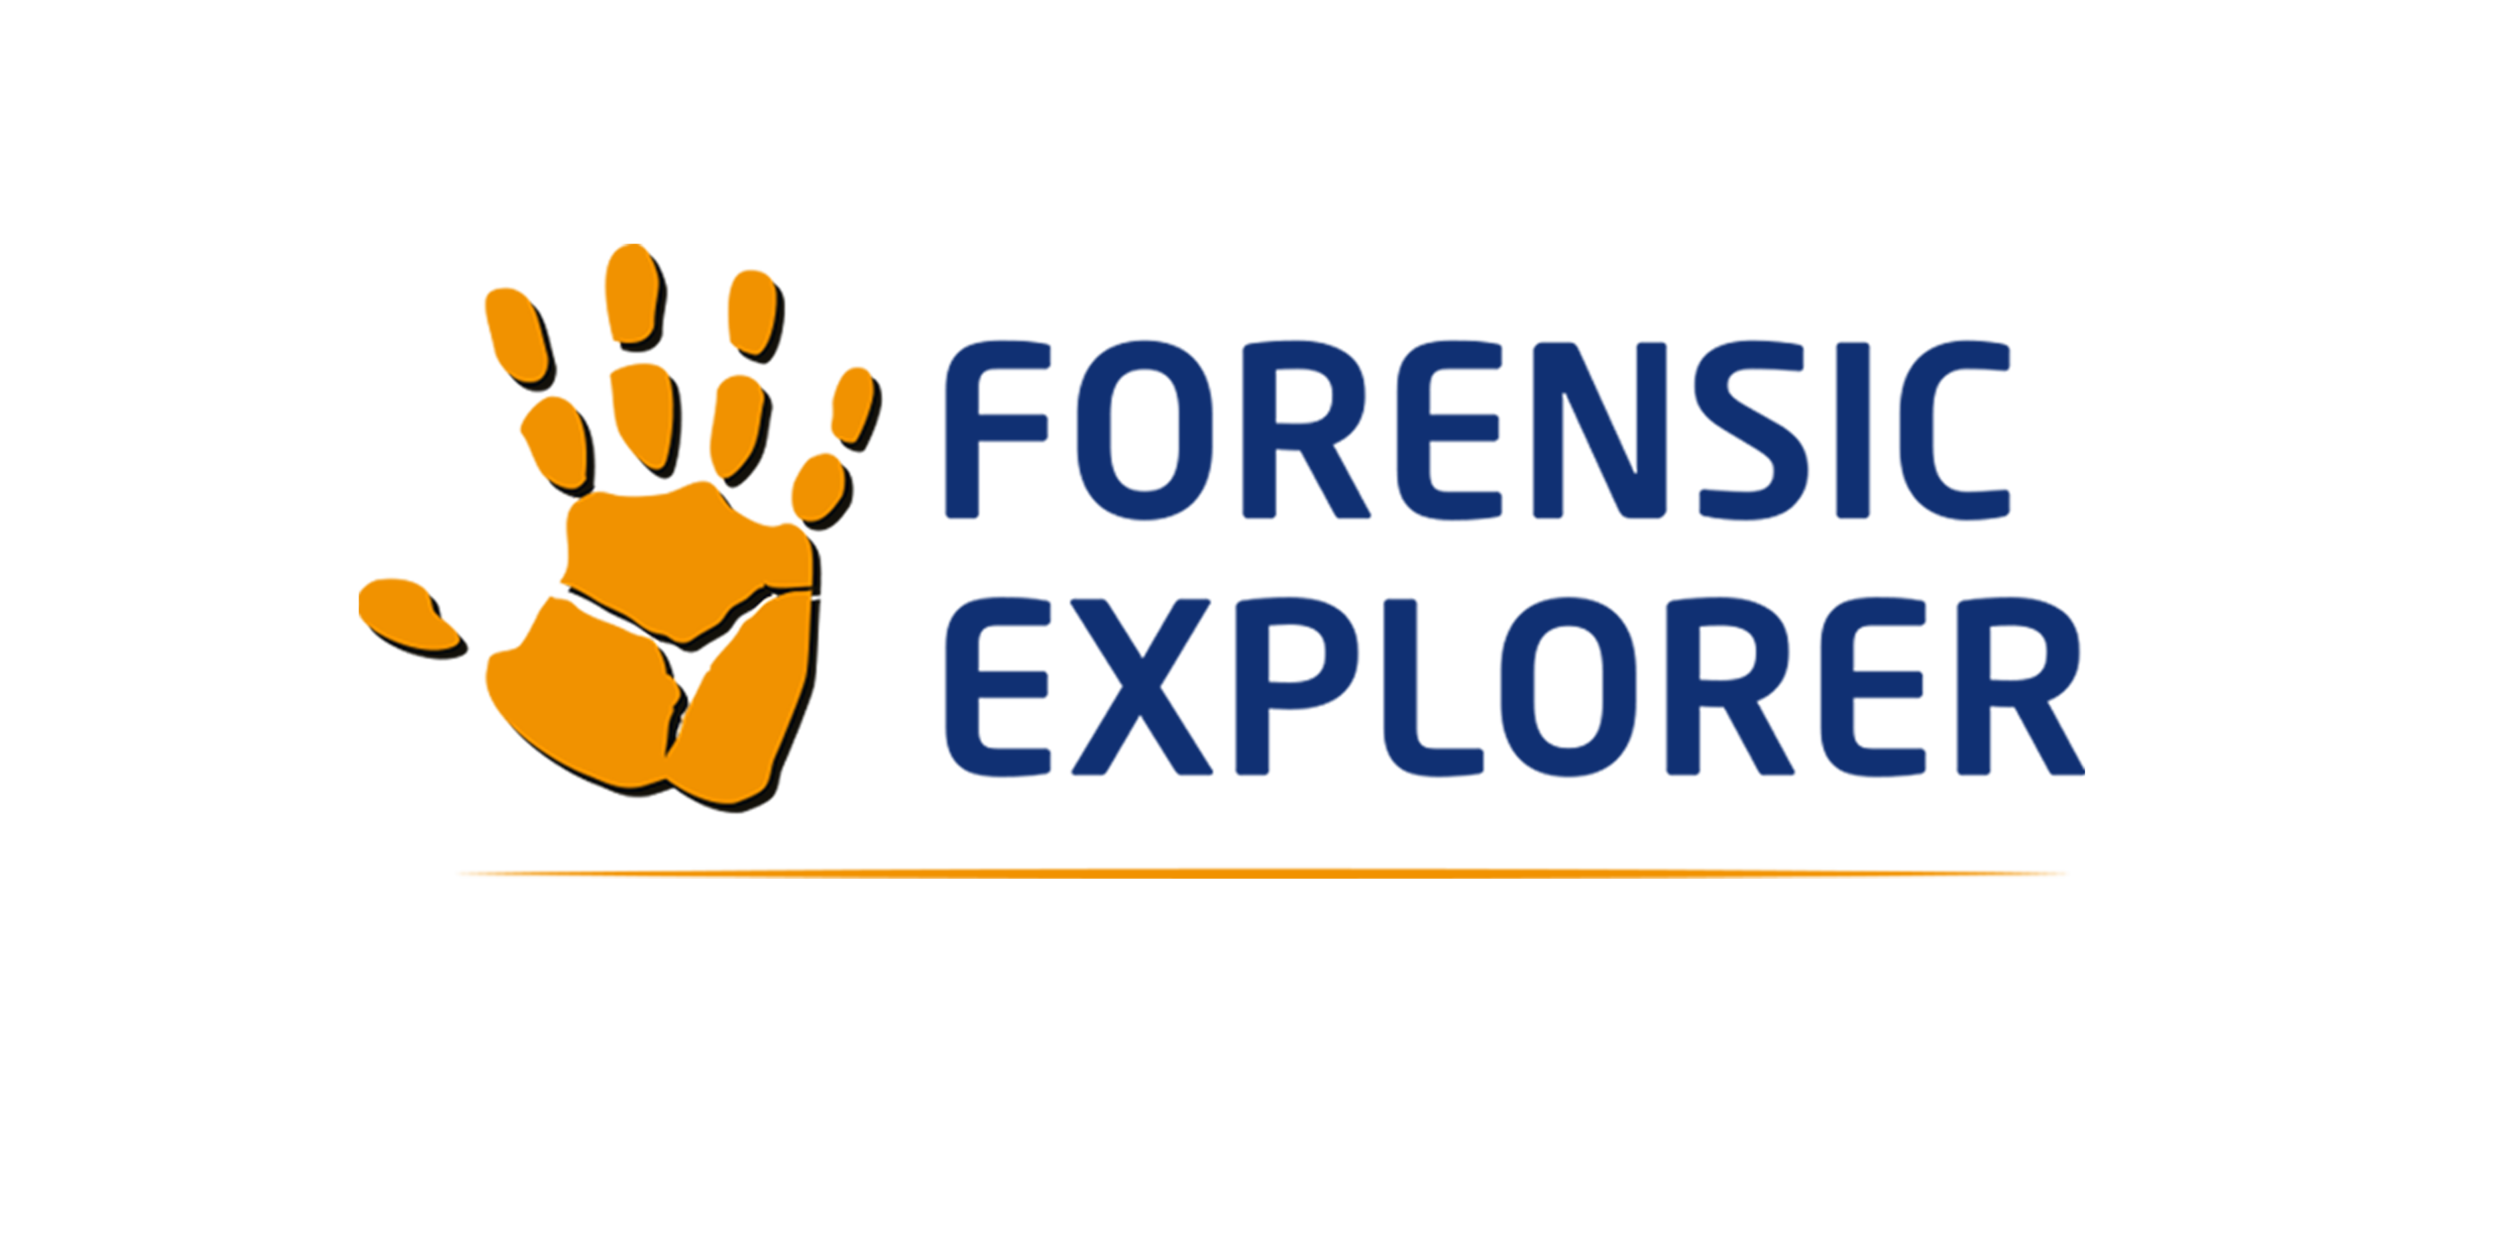 Très simple à utiliser, Forensic Explorer permet d'aller rapidement à l'essentiel et facilite la virtualisation 